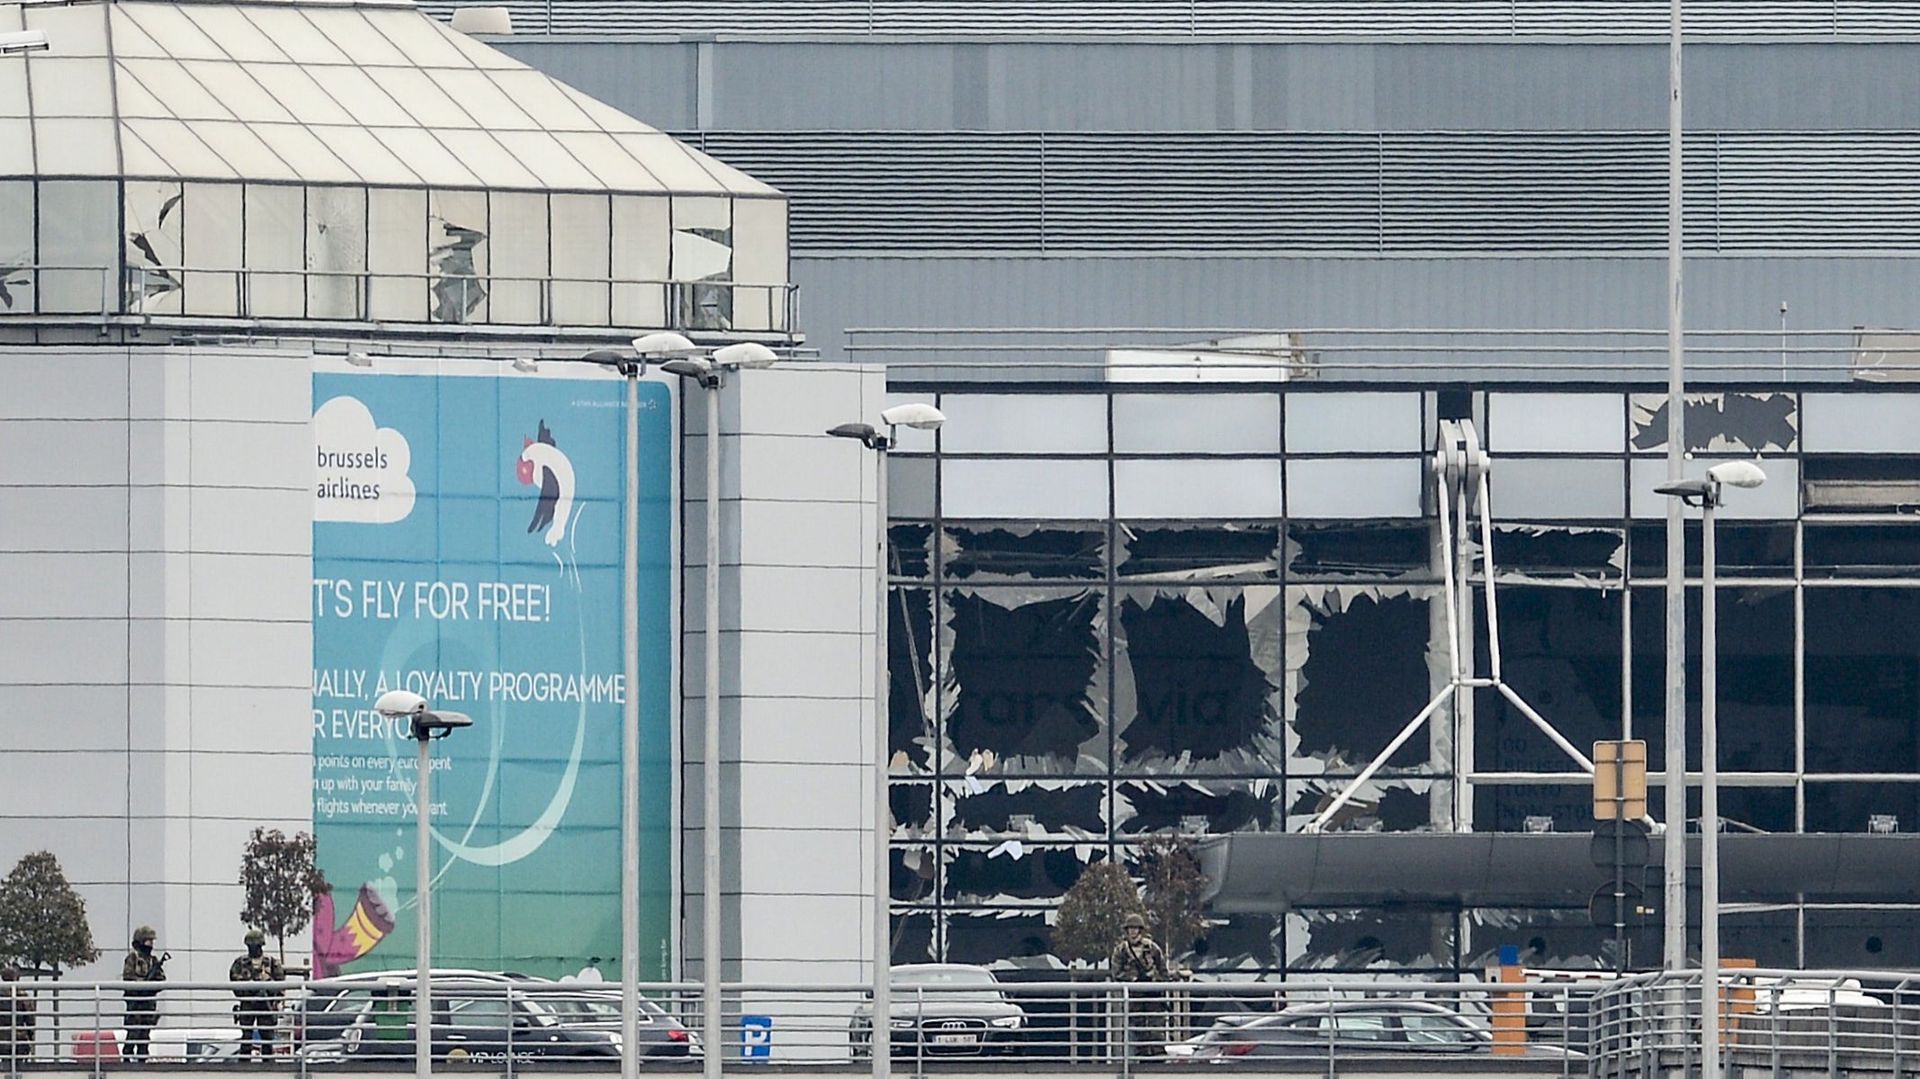 Le hall de départ explosé photographié à l’aéroport de Bruxelles, à Zaventem, mardi 22 mars 2016. Deux explosions dans le hall de départ de l’aéroport de Bruxelles ont coûté la vie à 11 personnes, 81 ont été blessées.